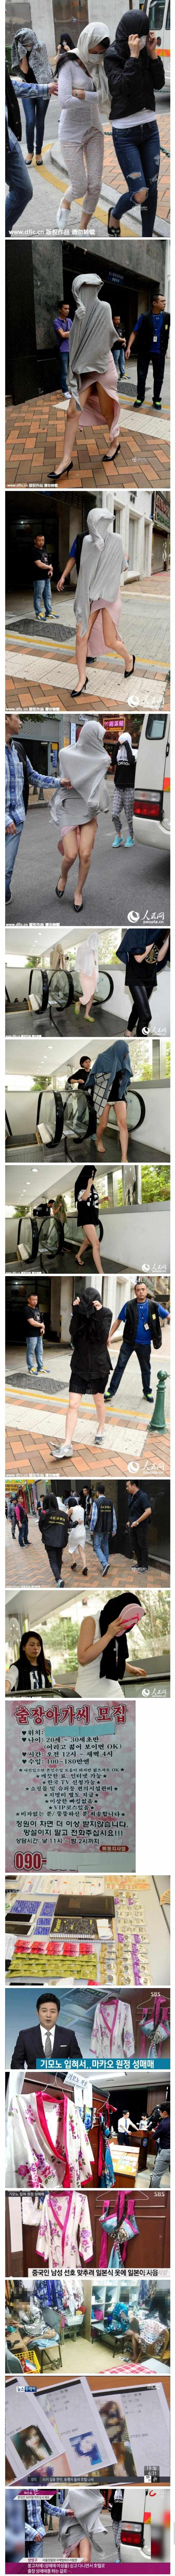 Prostitutes in Macau.jpg